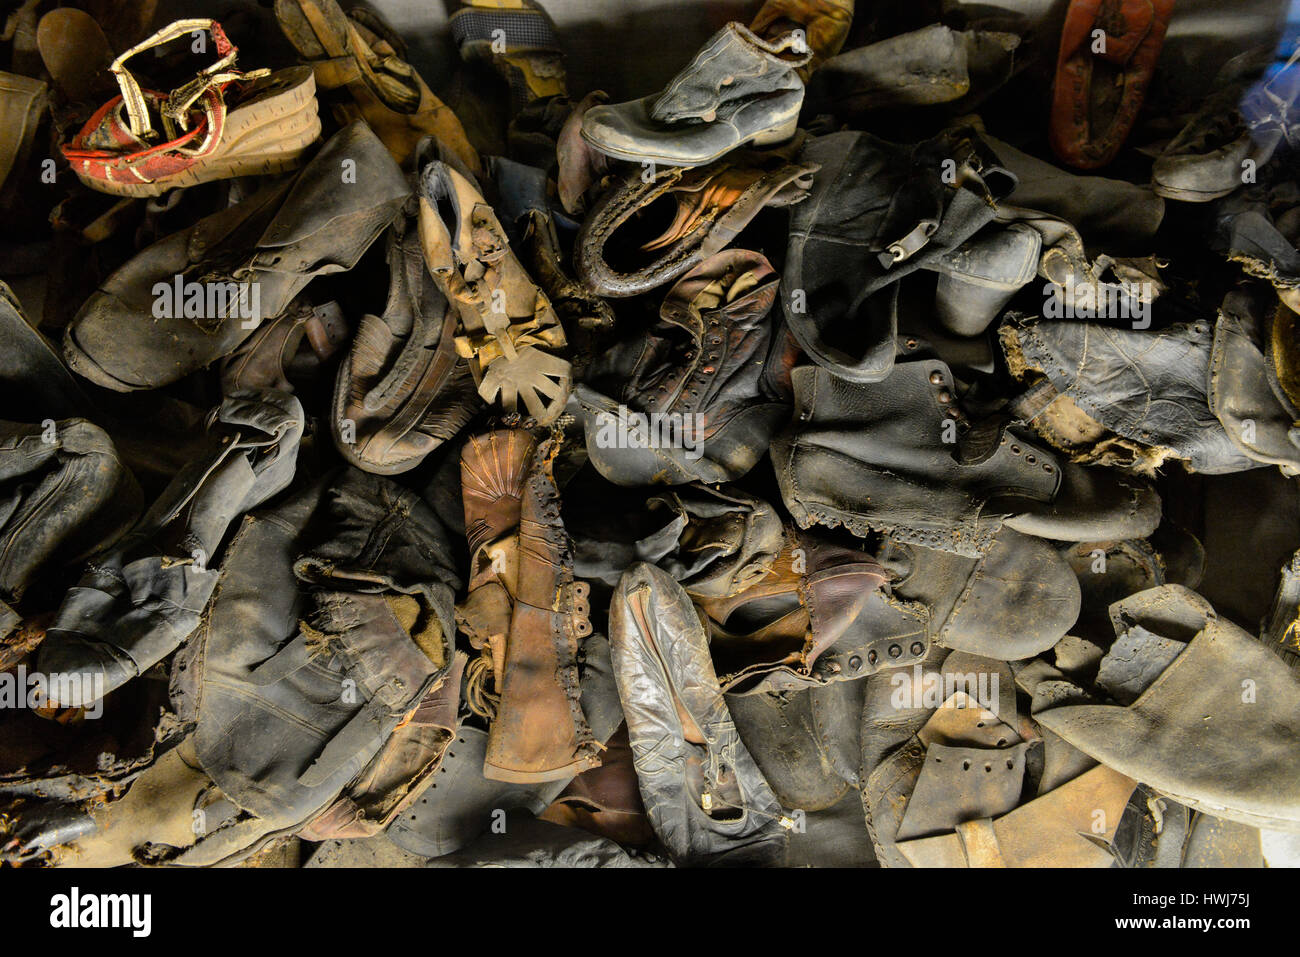 Schuhe, Ausstellung, Stammlager I, Konzentrationslager, Auschwitz-Birkenau, Auschwitz, Polen Foto Stock